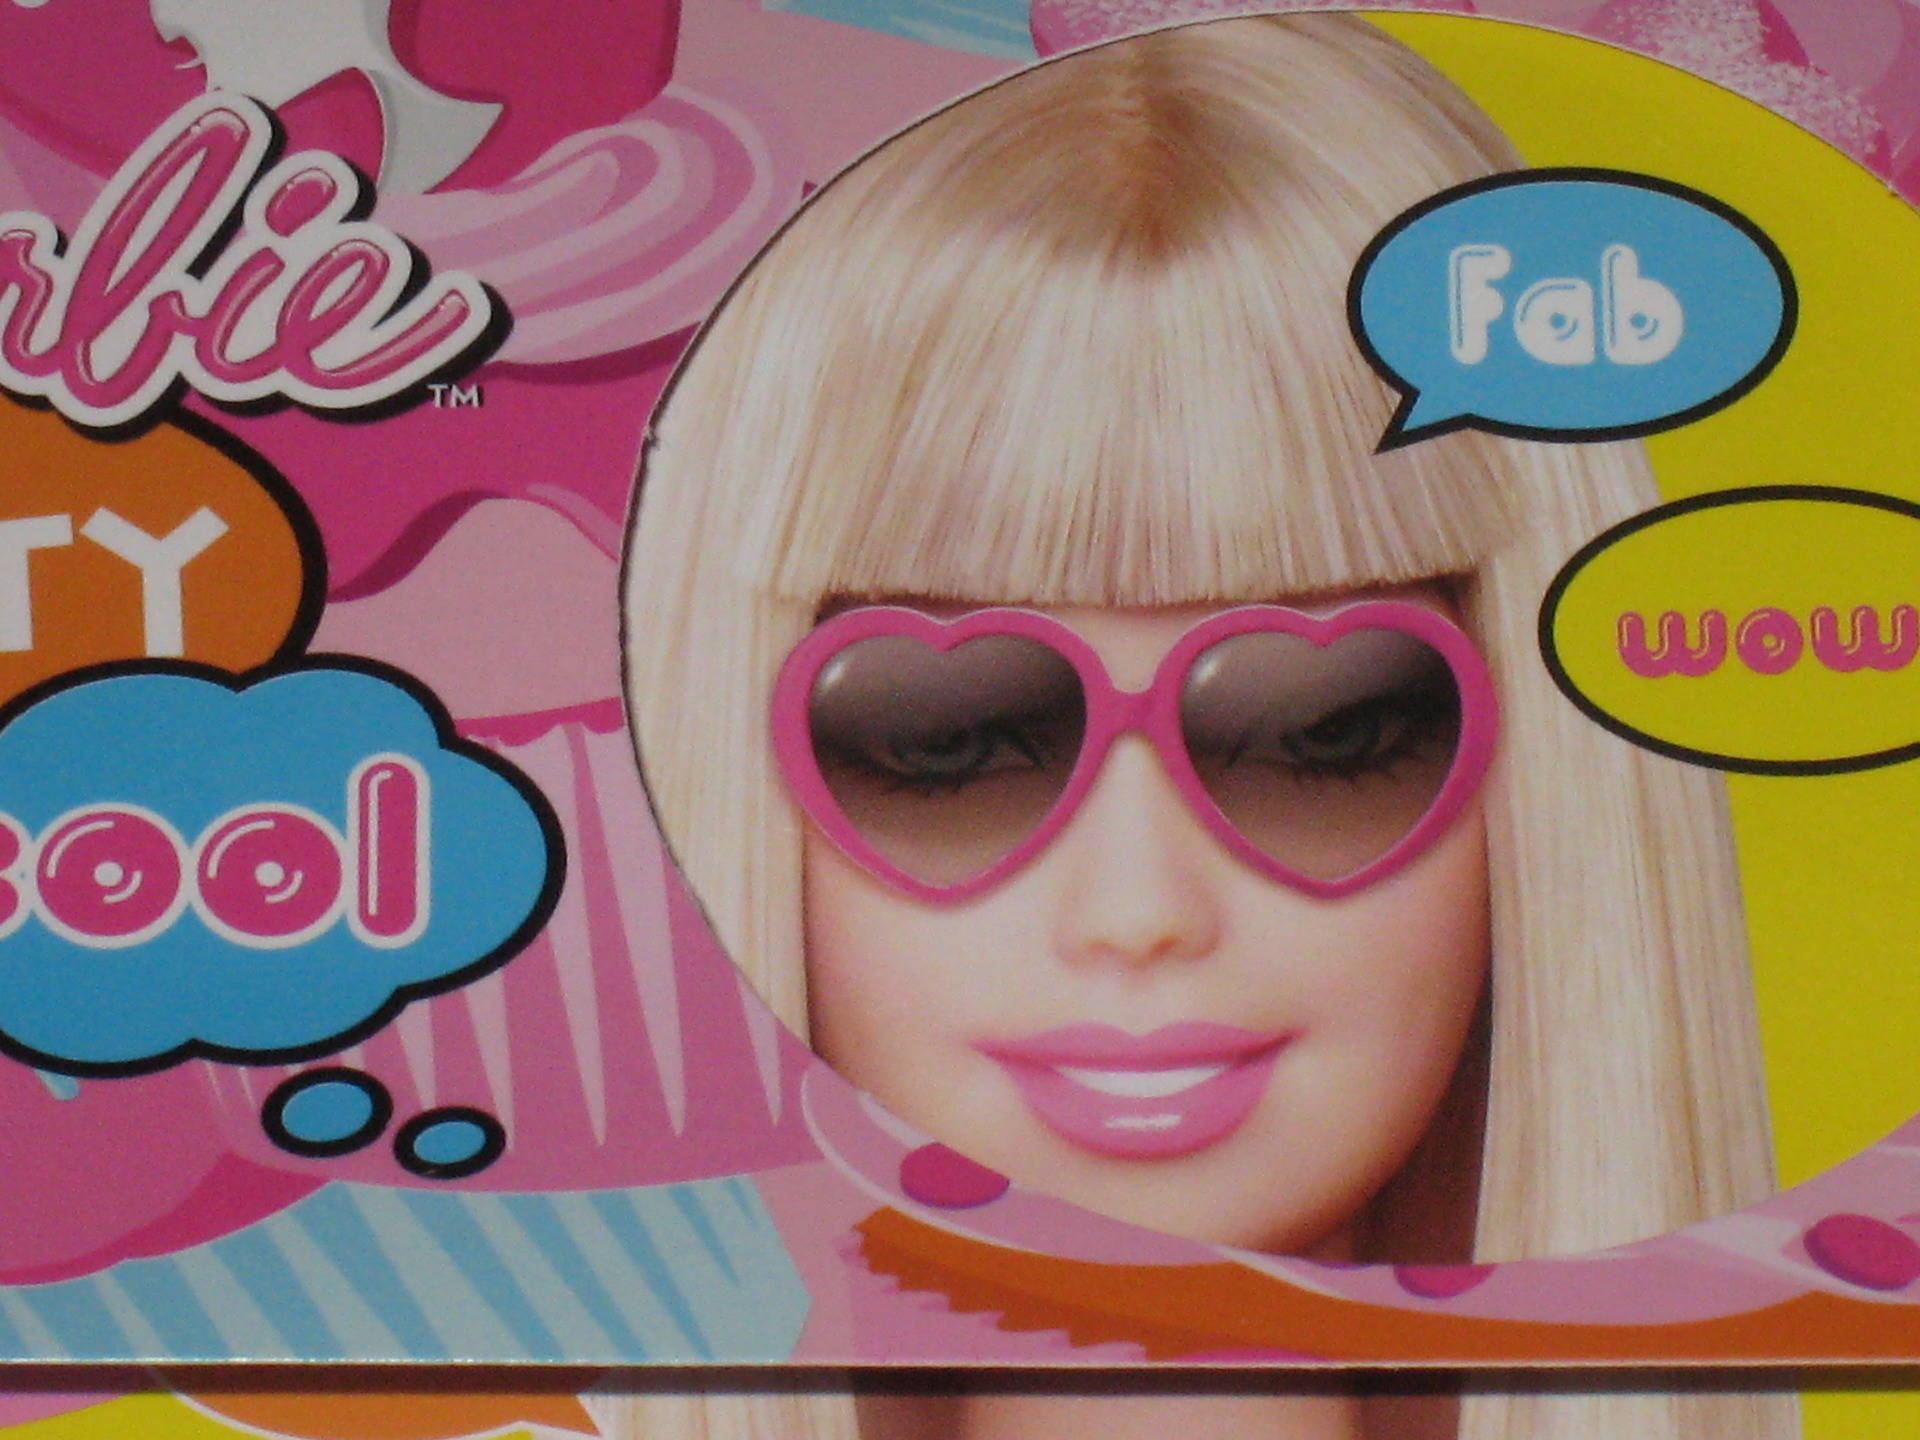 Carte d'anniversaire Barbie pour 4 ans, carte d'anniversaire